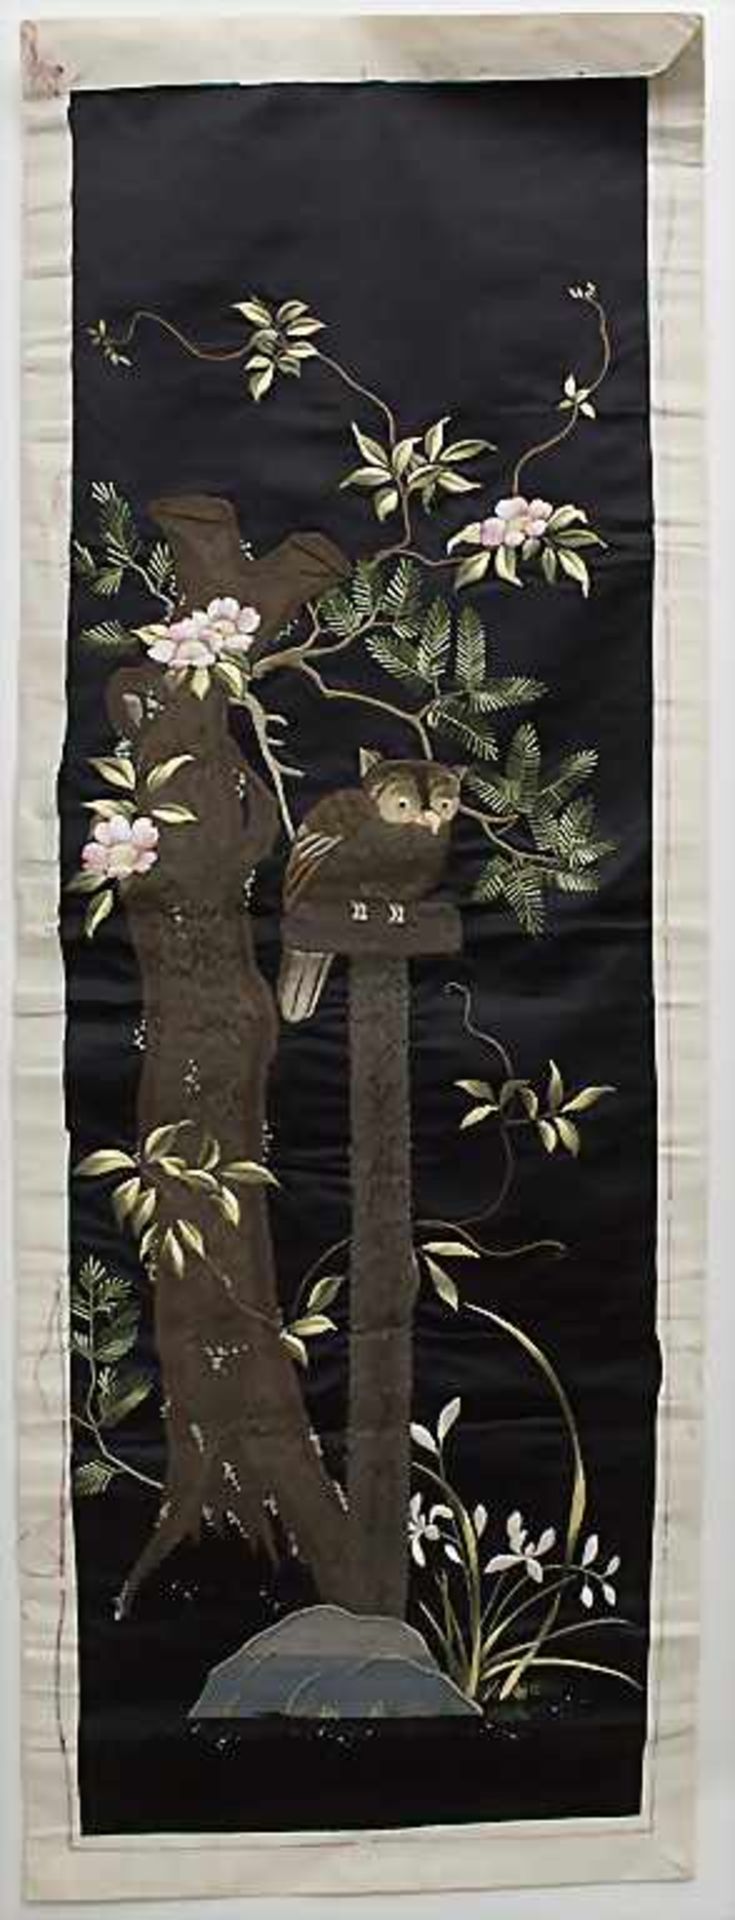 Seiden-Wandbehang 'Eule' / A silk wall hanging 'Owl', China, 1. Hälfte 20. Jh.Material: